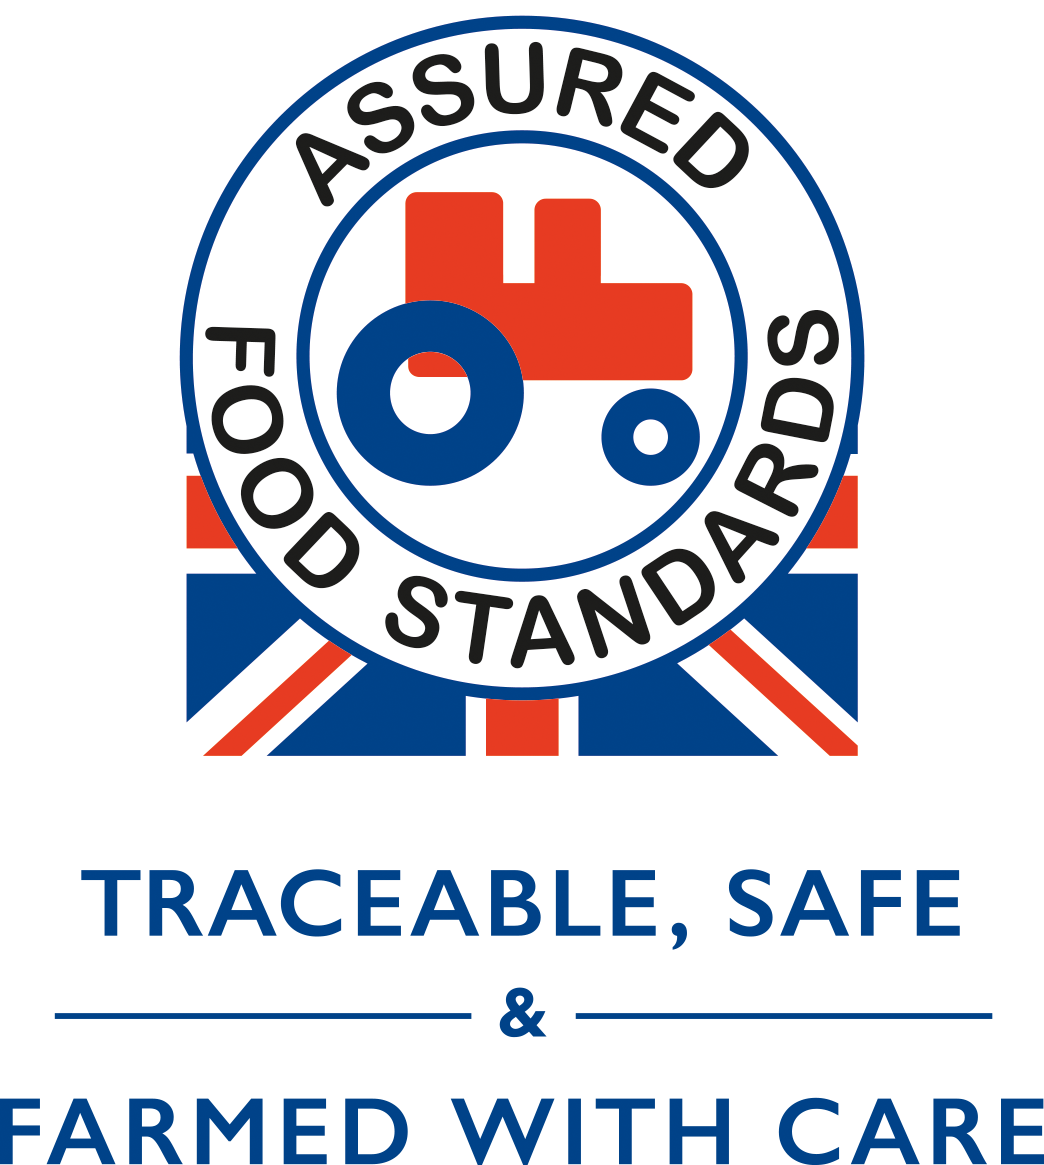 The old Assured Food Standards logo